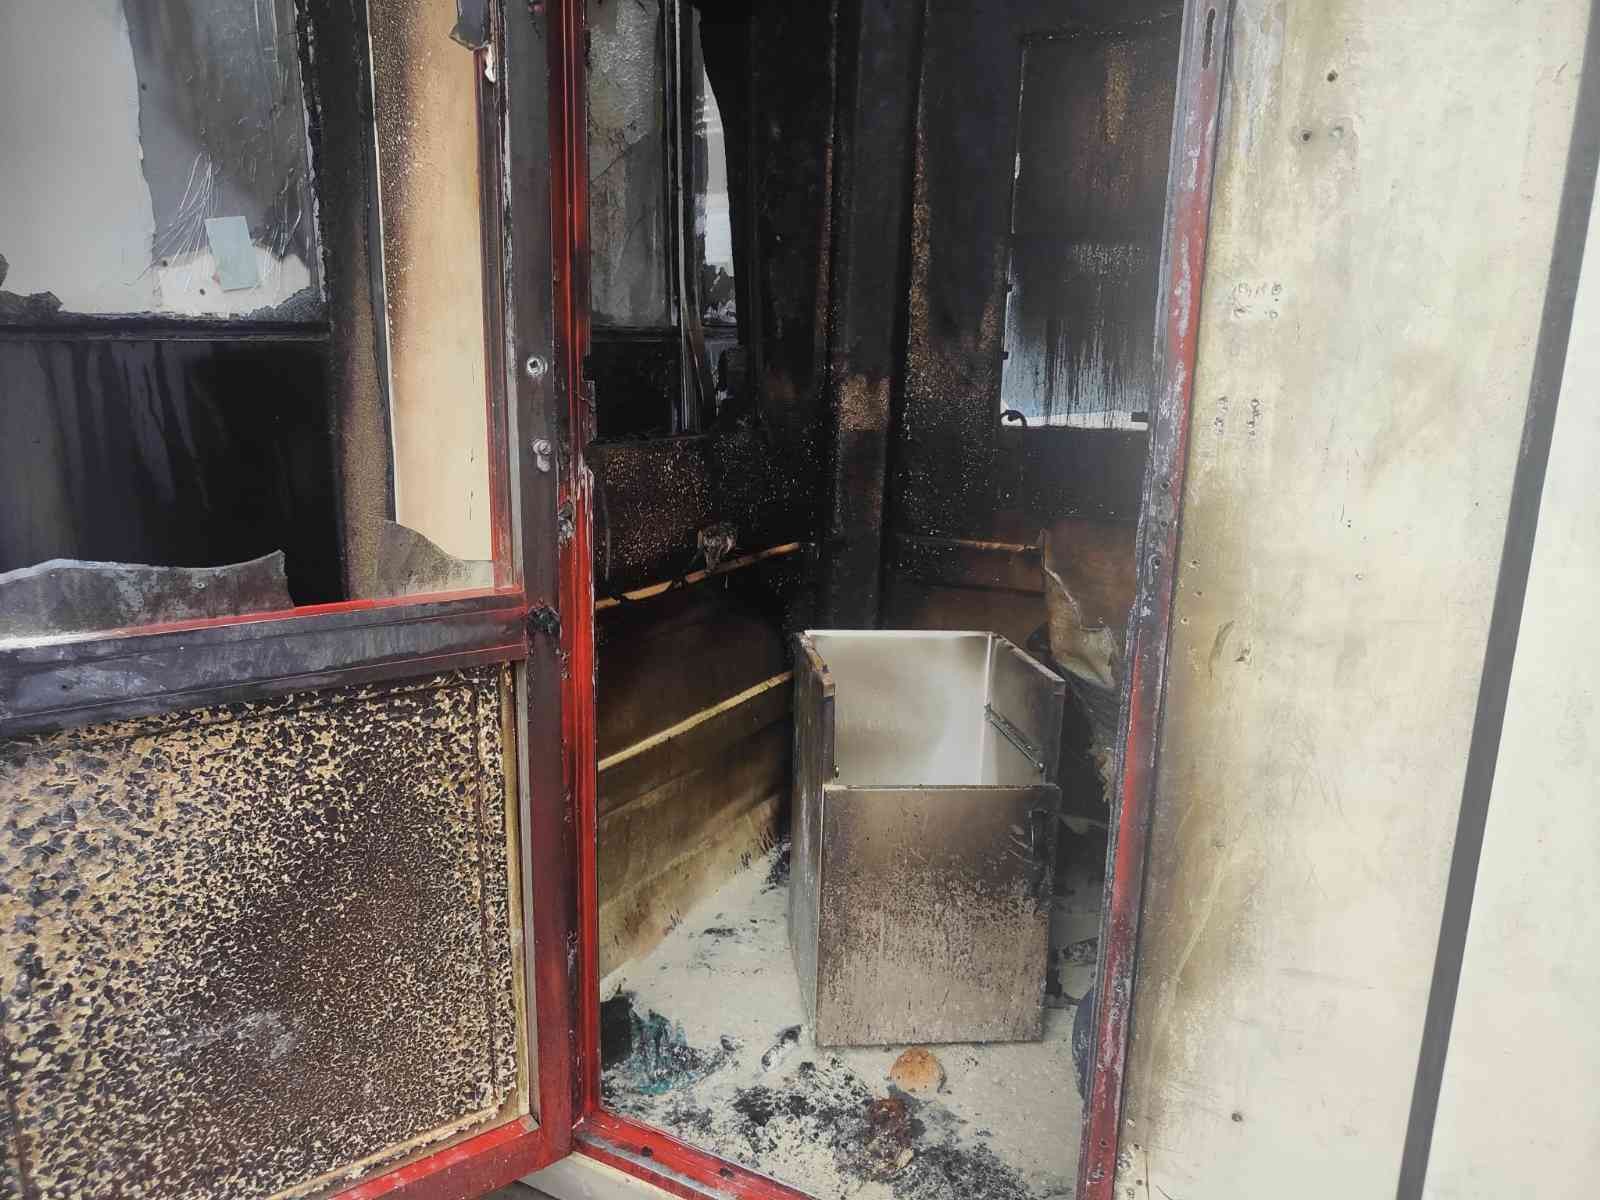 Kuşadası Devlet Hastanesi’nin güvenlik kulübesinde çıkan yangın korkuttu